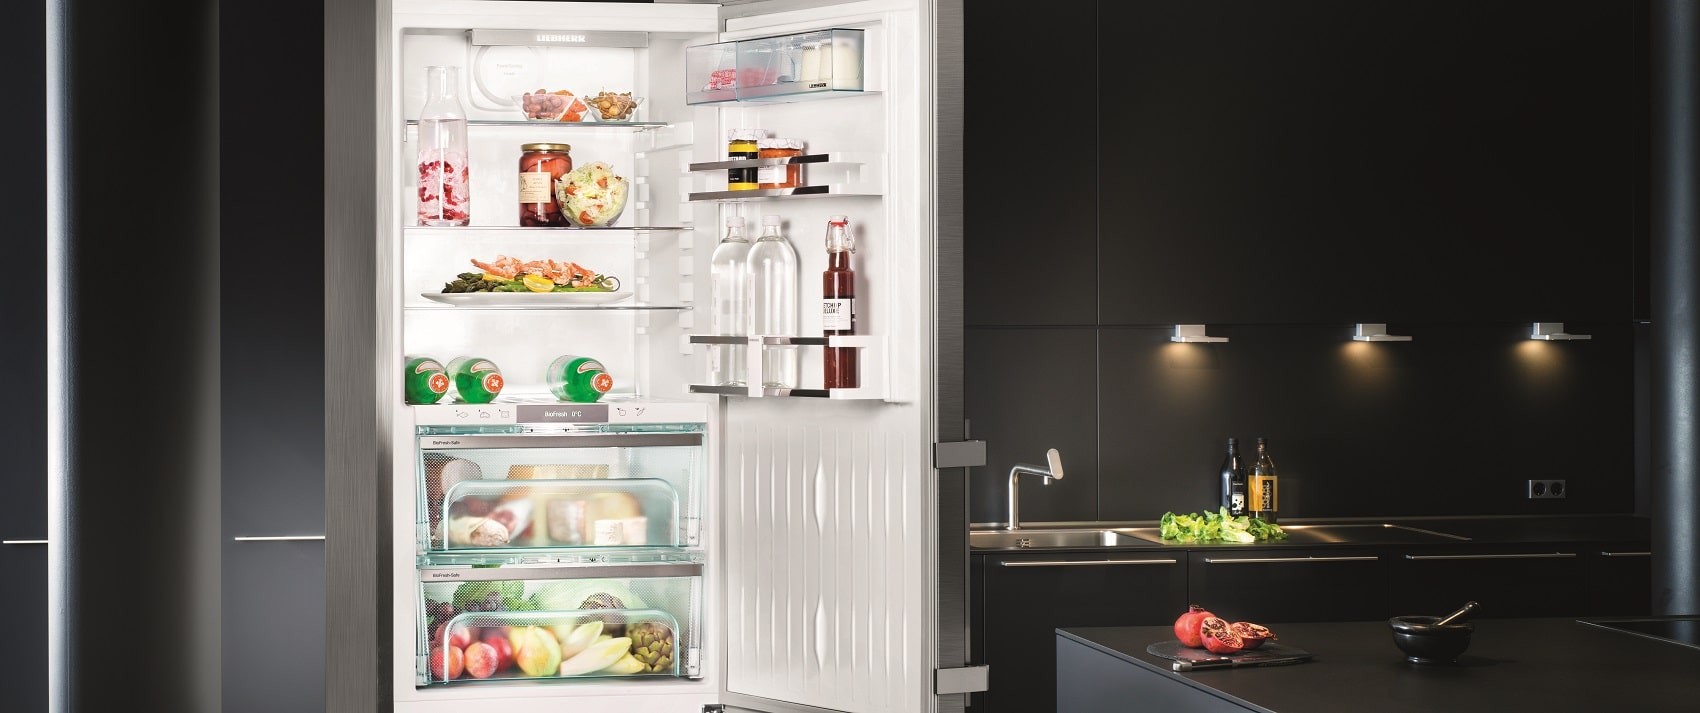 Что лучше двухкомпрессорный или однокомпрессорный холодильник?